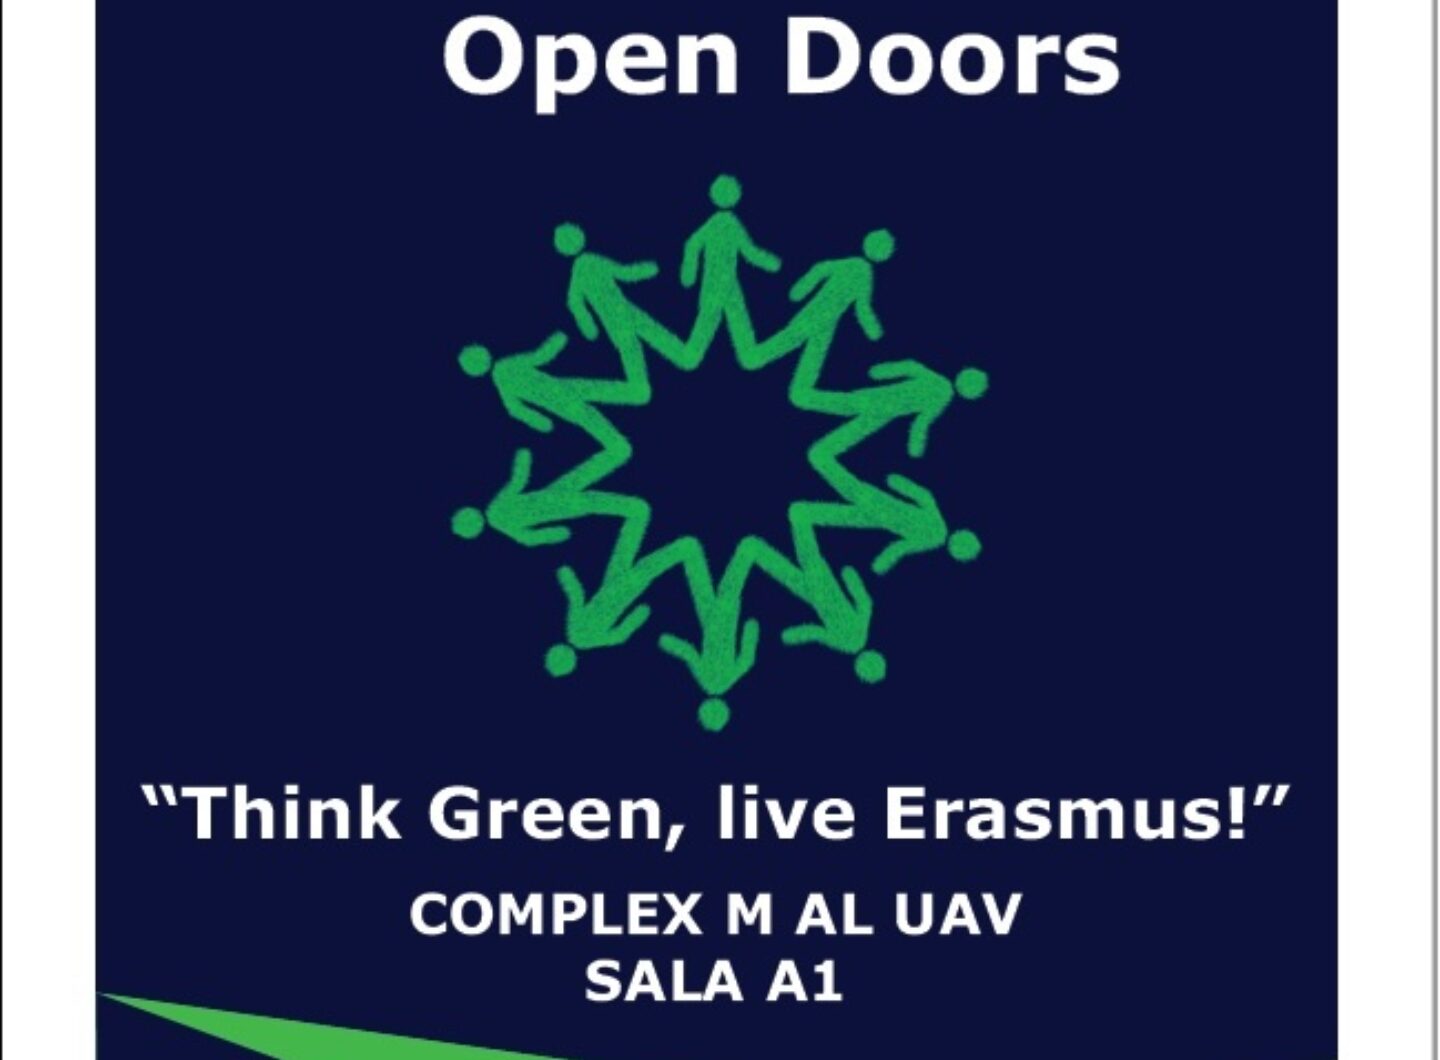 Erasmus open door